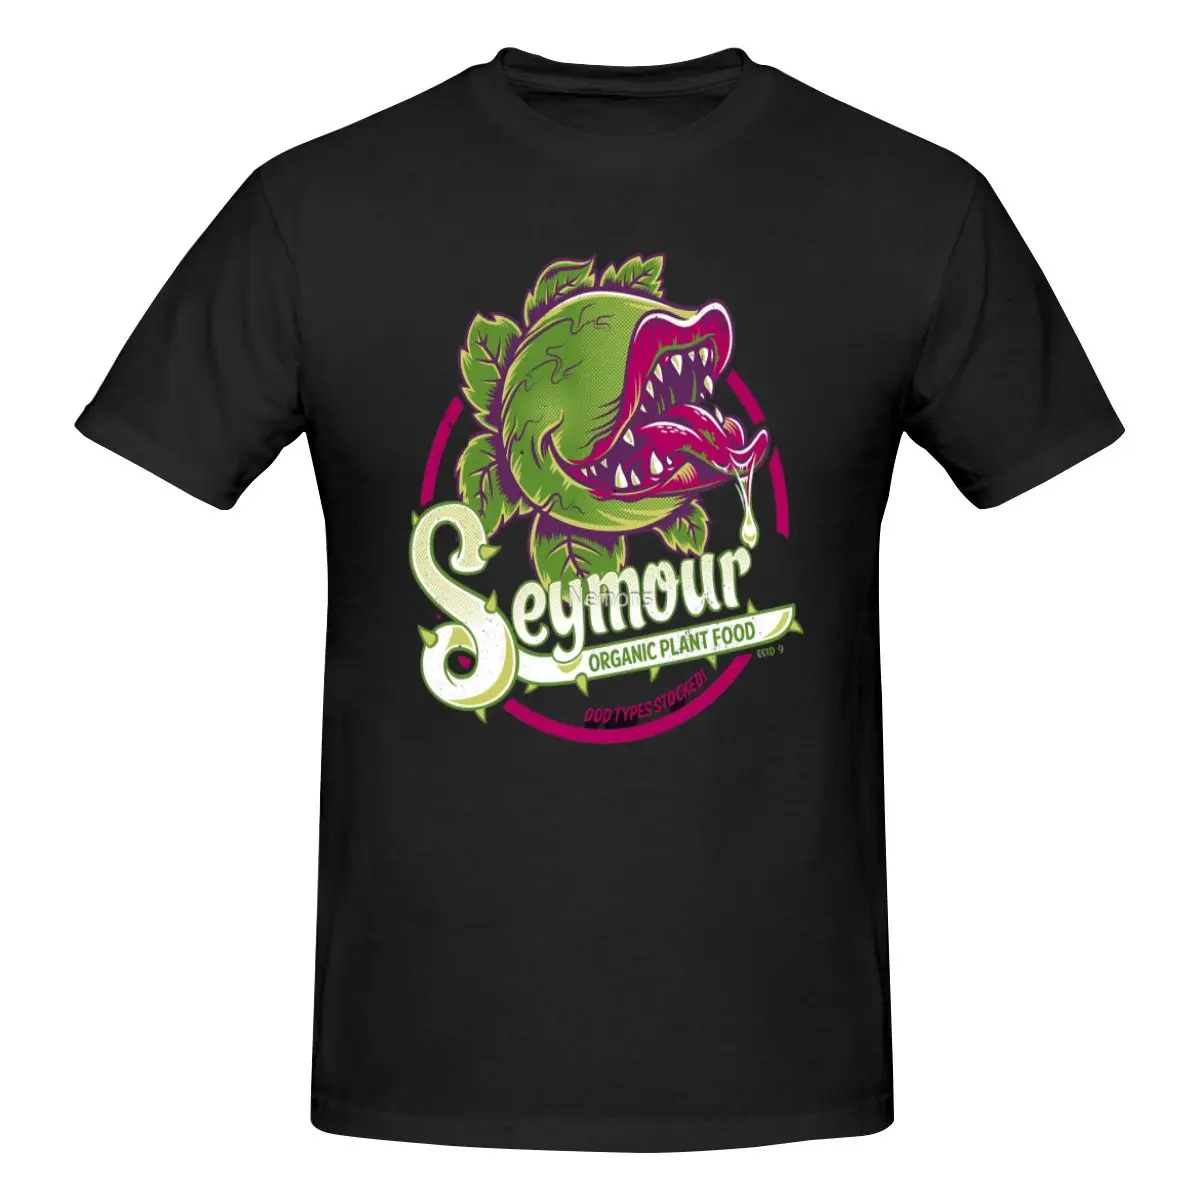 

Мужская футболка с коротким рукавом Seymour's Organic Plant Food-Музыкальный театр, 100% хлопок, свободная футболка